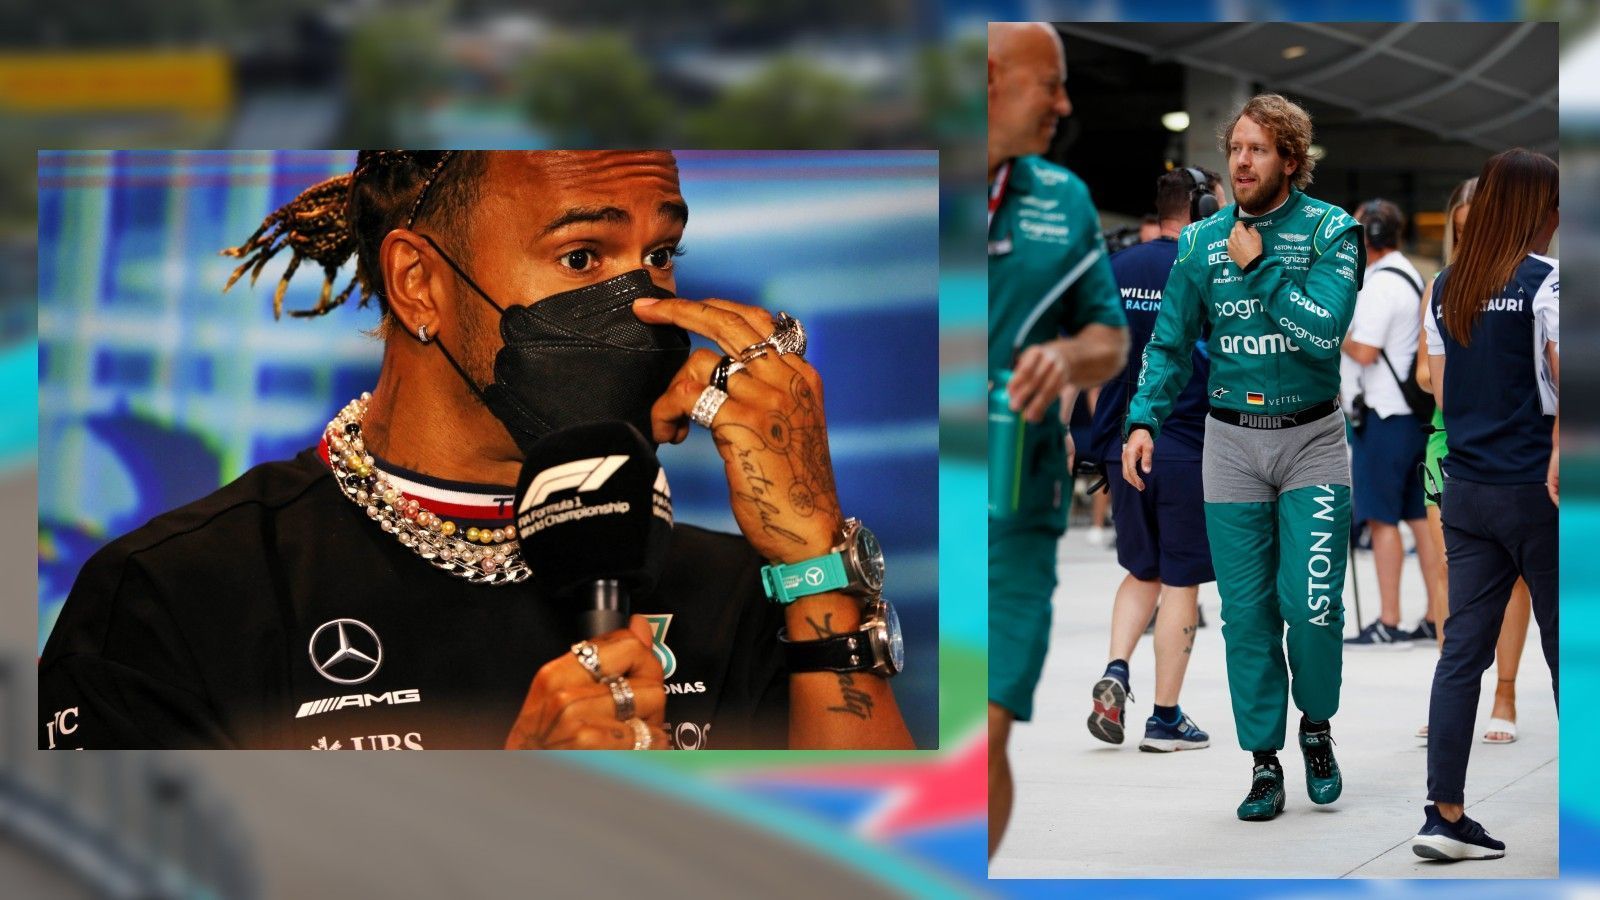 
                <strong>Die kuriosen Fahrer-Proteste in Miami</strong><br>
                In Miami trägt Lewis Hamilton jede Menge Schmuck - als Zeichen des Protests gegen das strenger kontrollierte Verbot von Schmuck im Auto. Auch Sebastian Vettel protestiert. ran zeigt die skurrilen Aktionen.
              